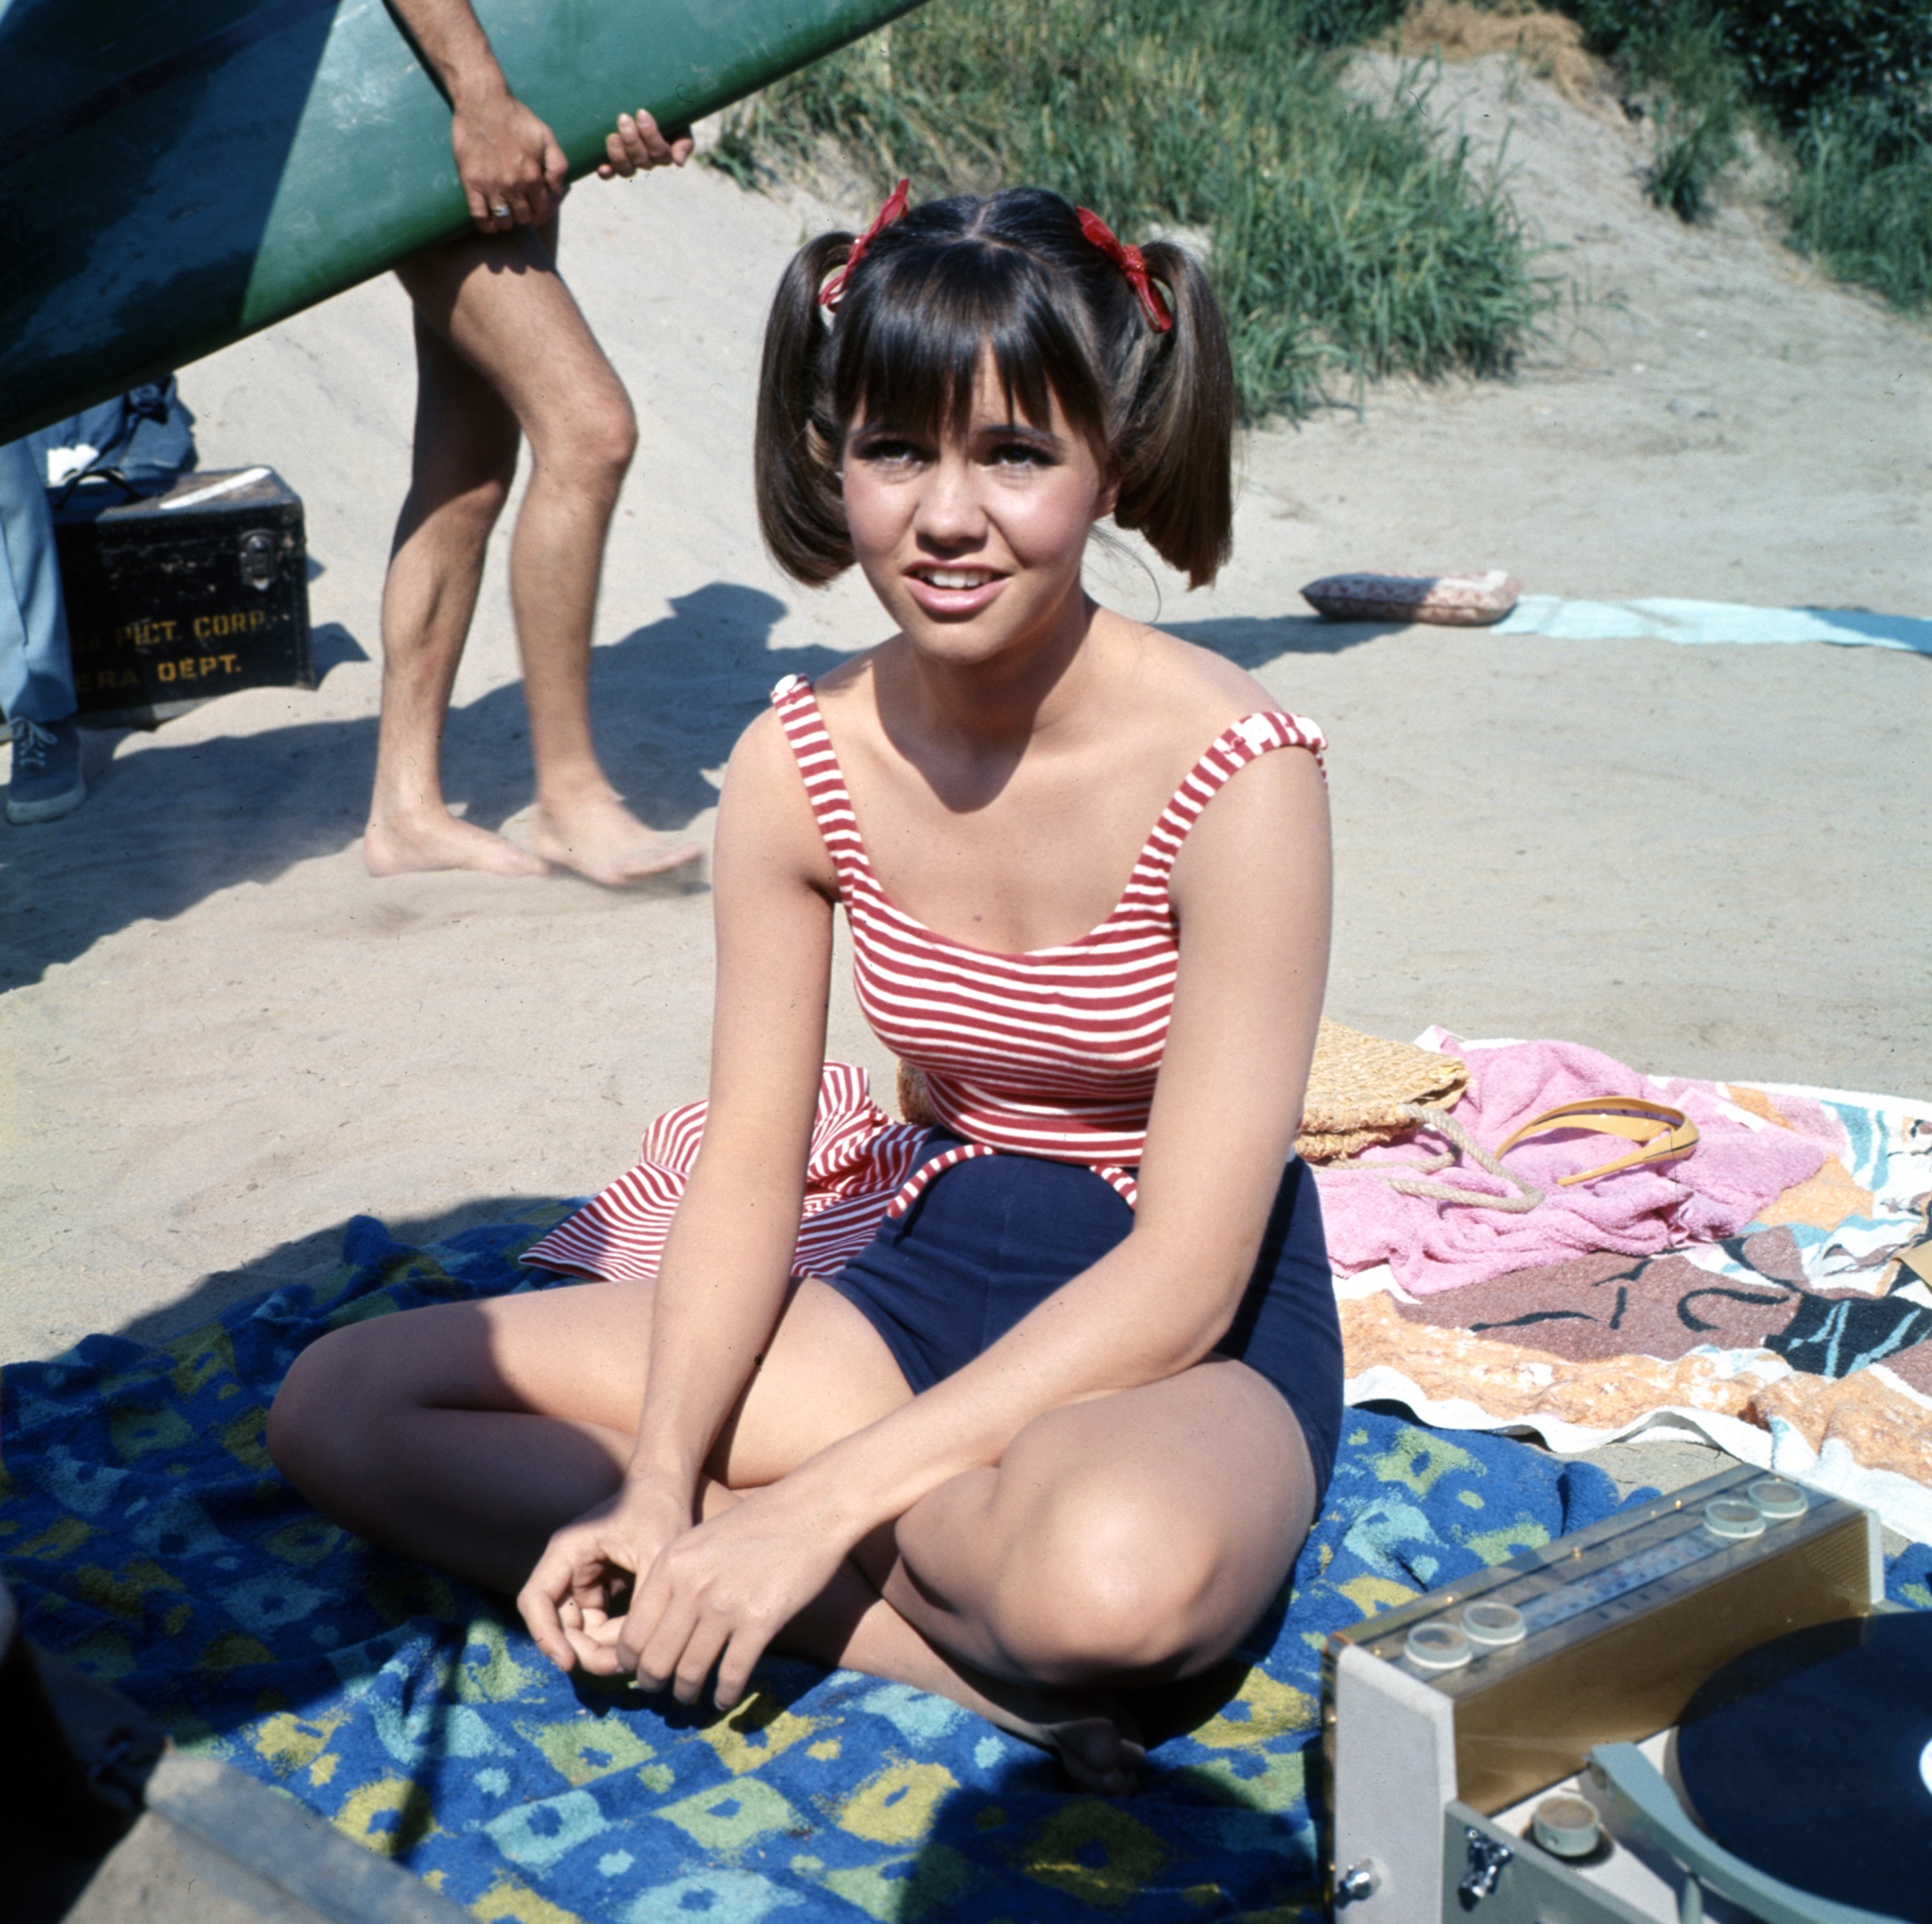 Sally Field jouant Gidget pendant la première saison de "Gidget" en 1965 | Source : Getty Images